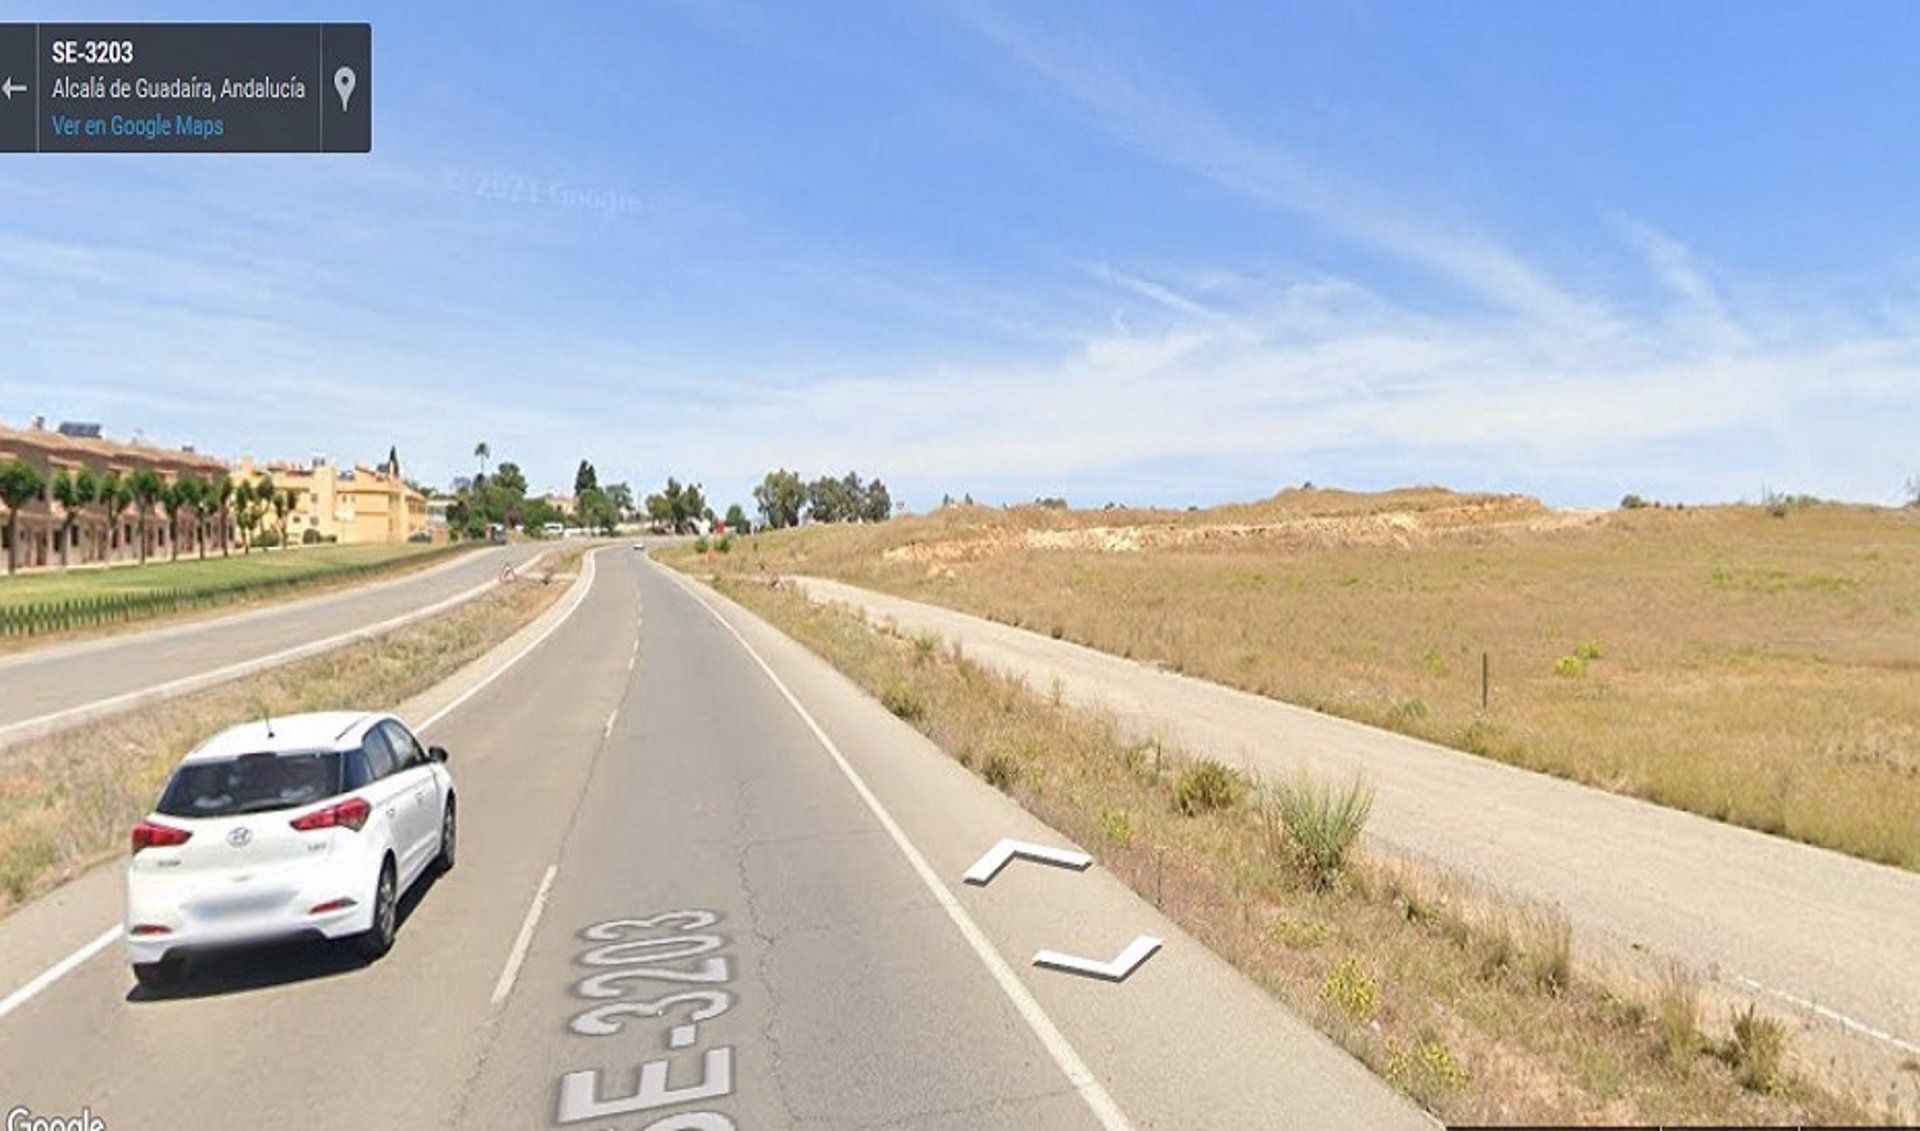 Muere un hombre arrollado por un coche en la localidad sevillana de Alcalá de Guadaíra